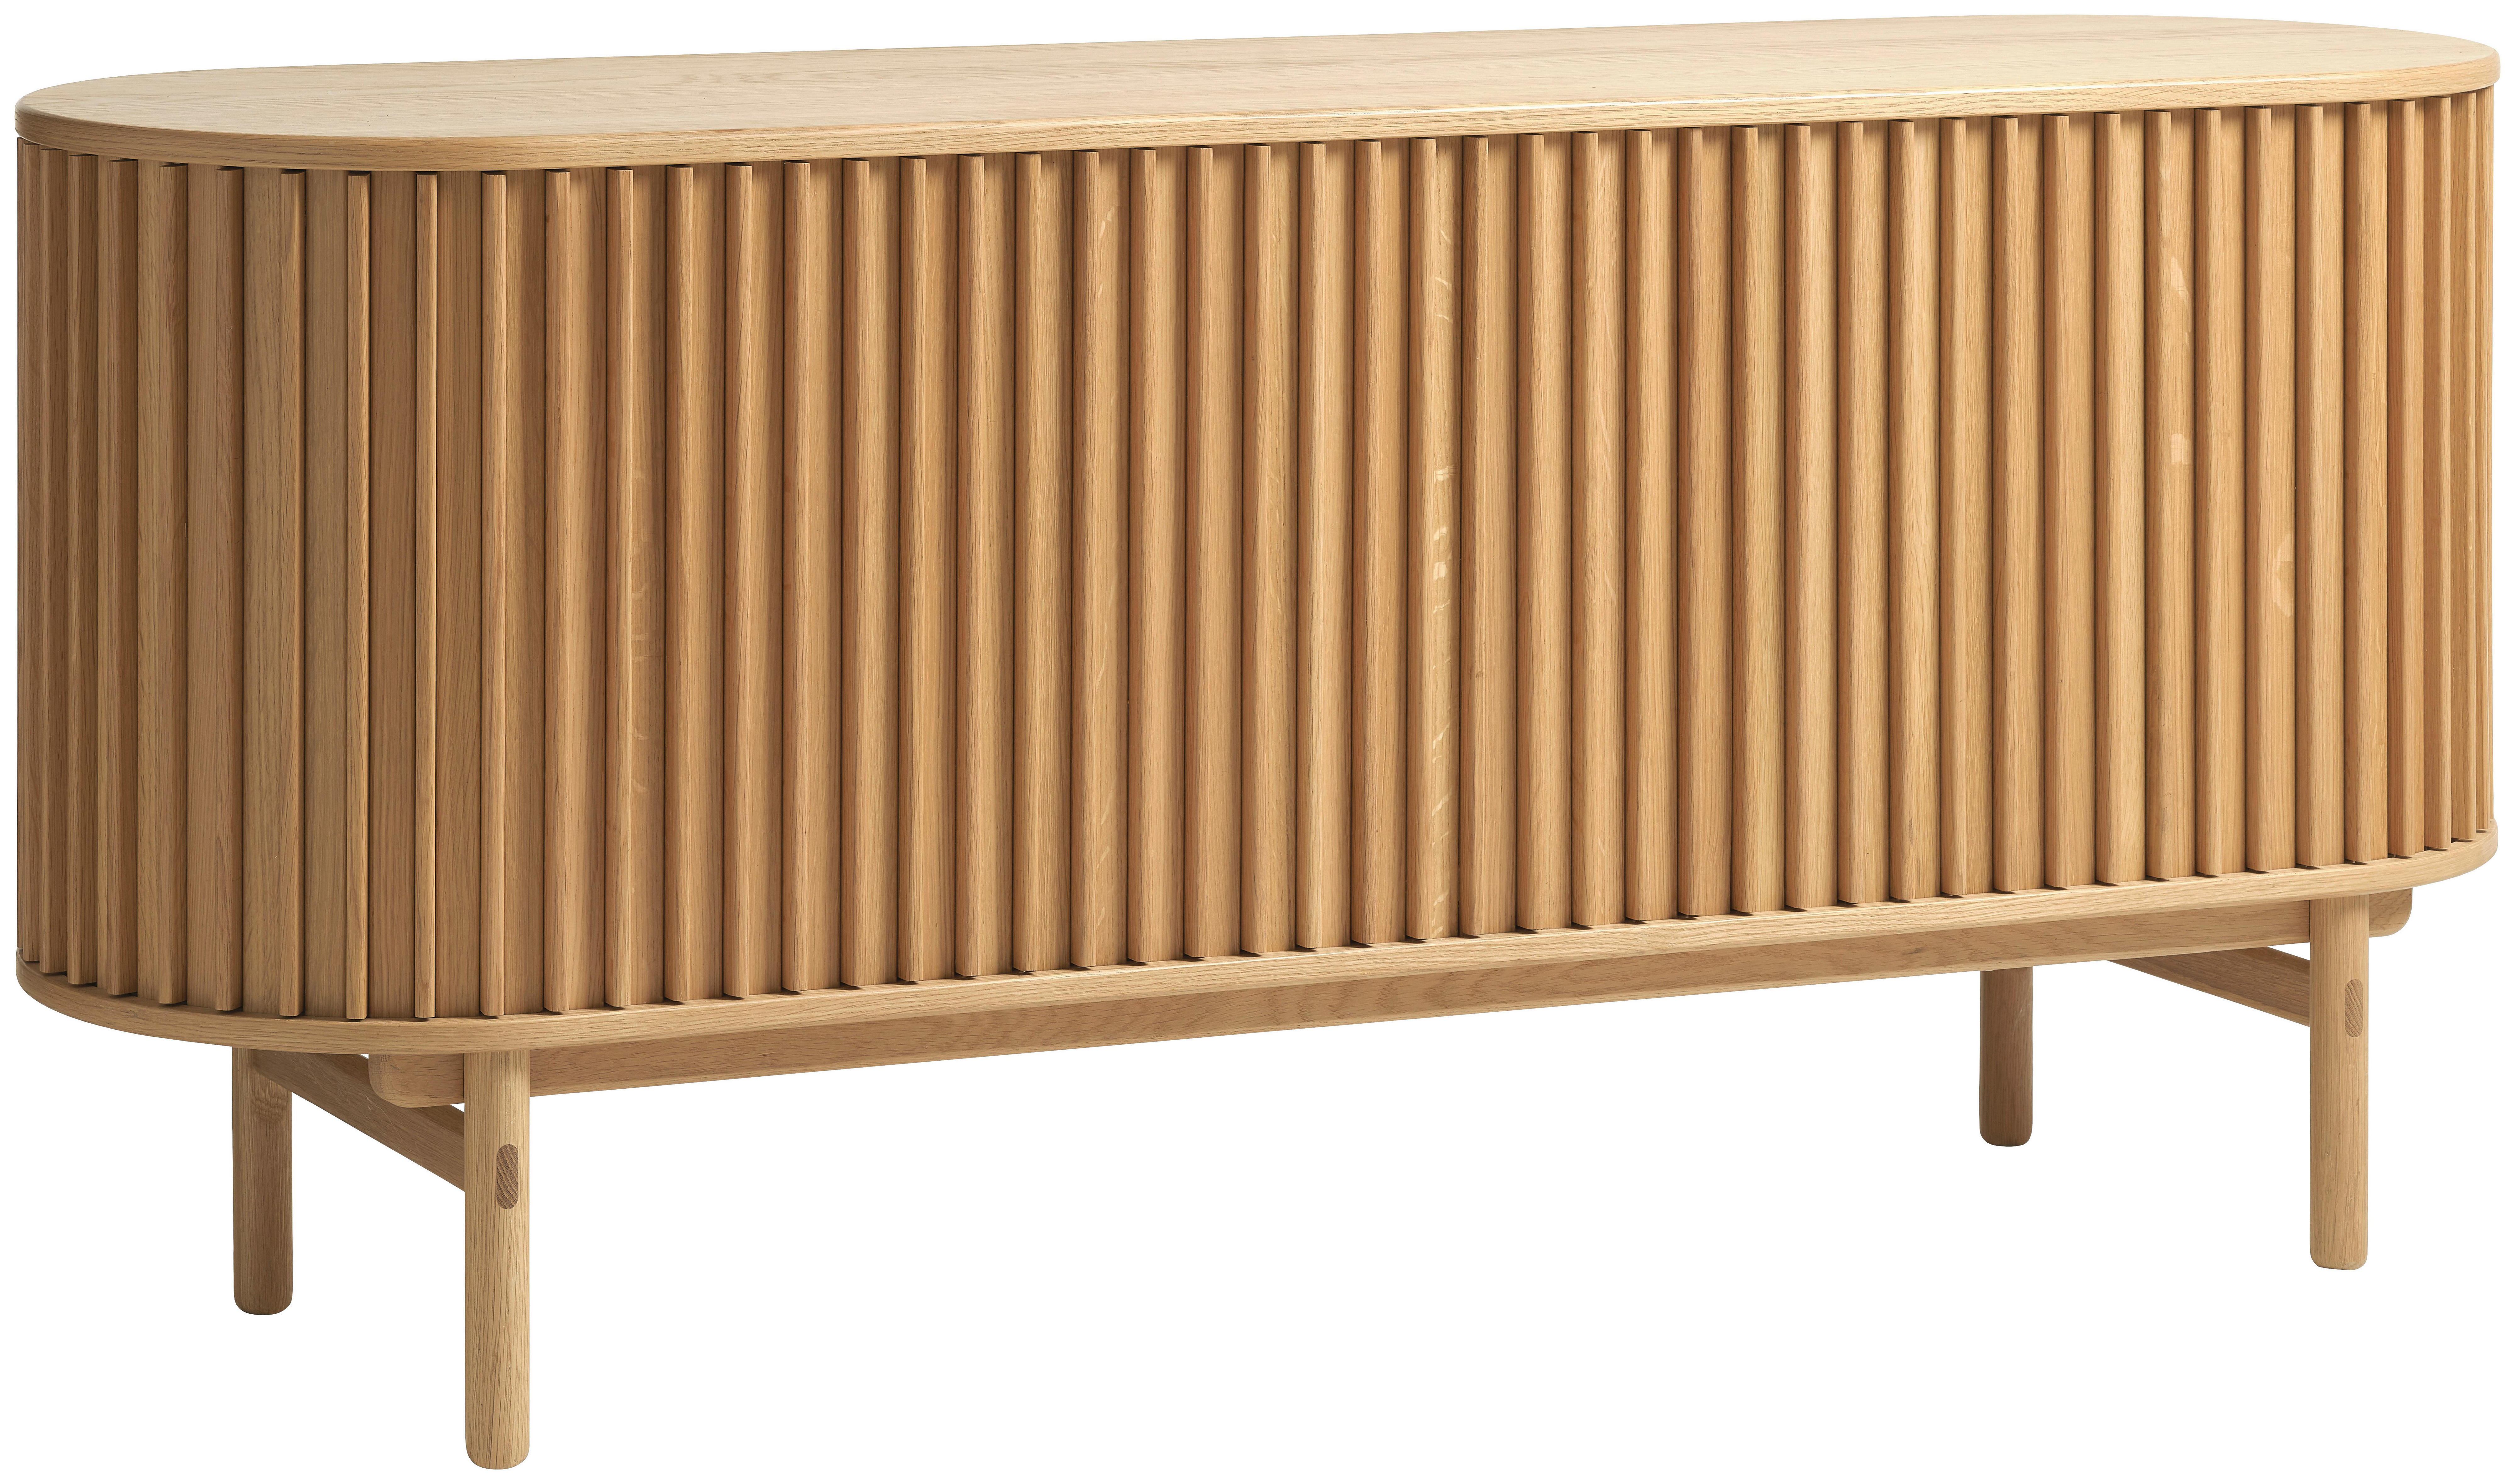 SIDEBOARD Eiche furniert, massiv Eichefarben  - Eichefarben, Design, Holz/Holzwerkstoff (160/73/45cm) - Lomoco